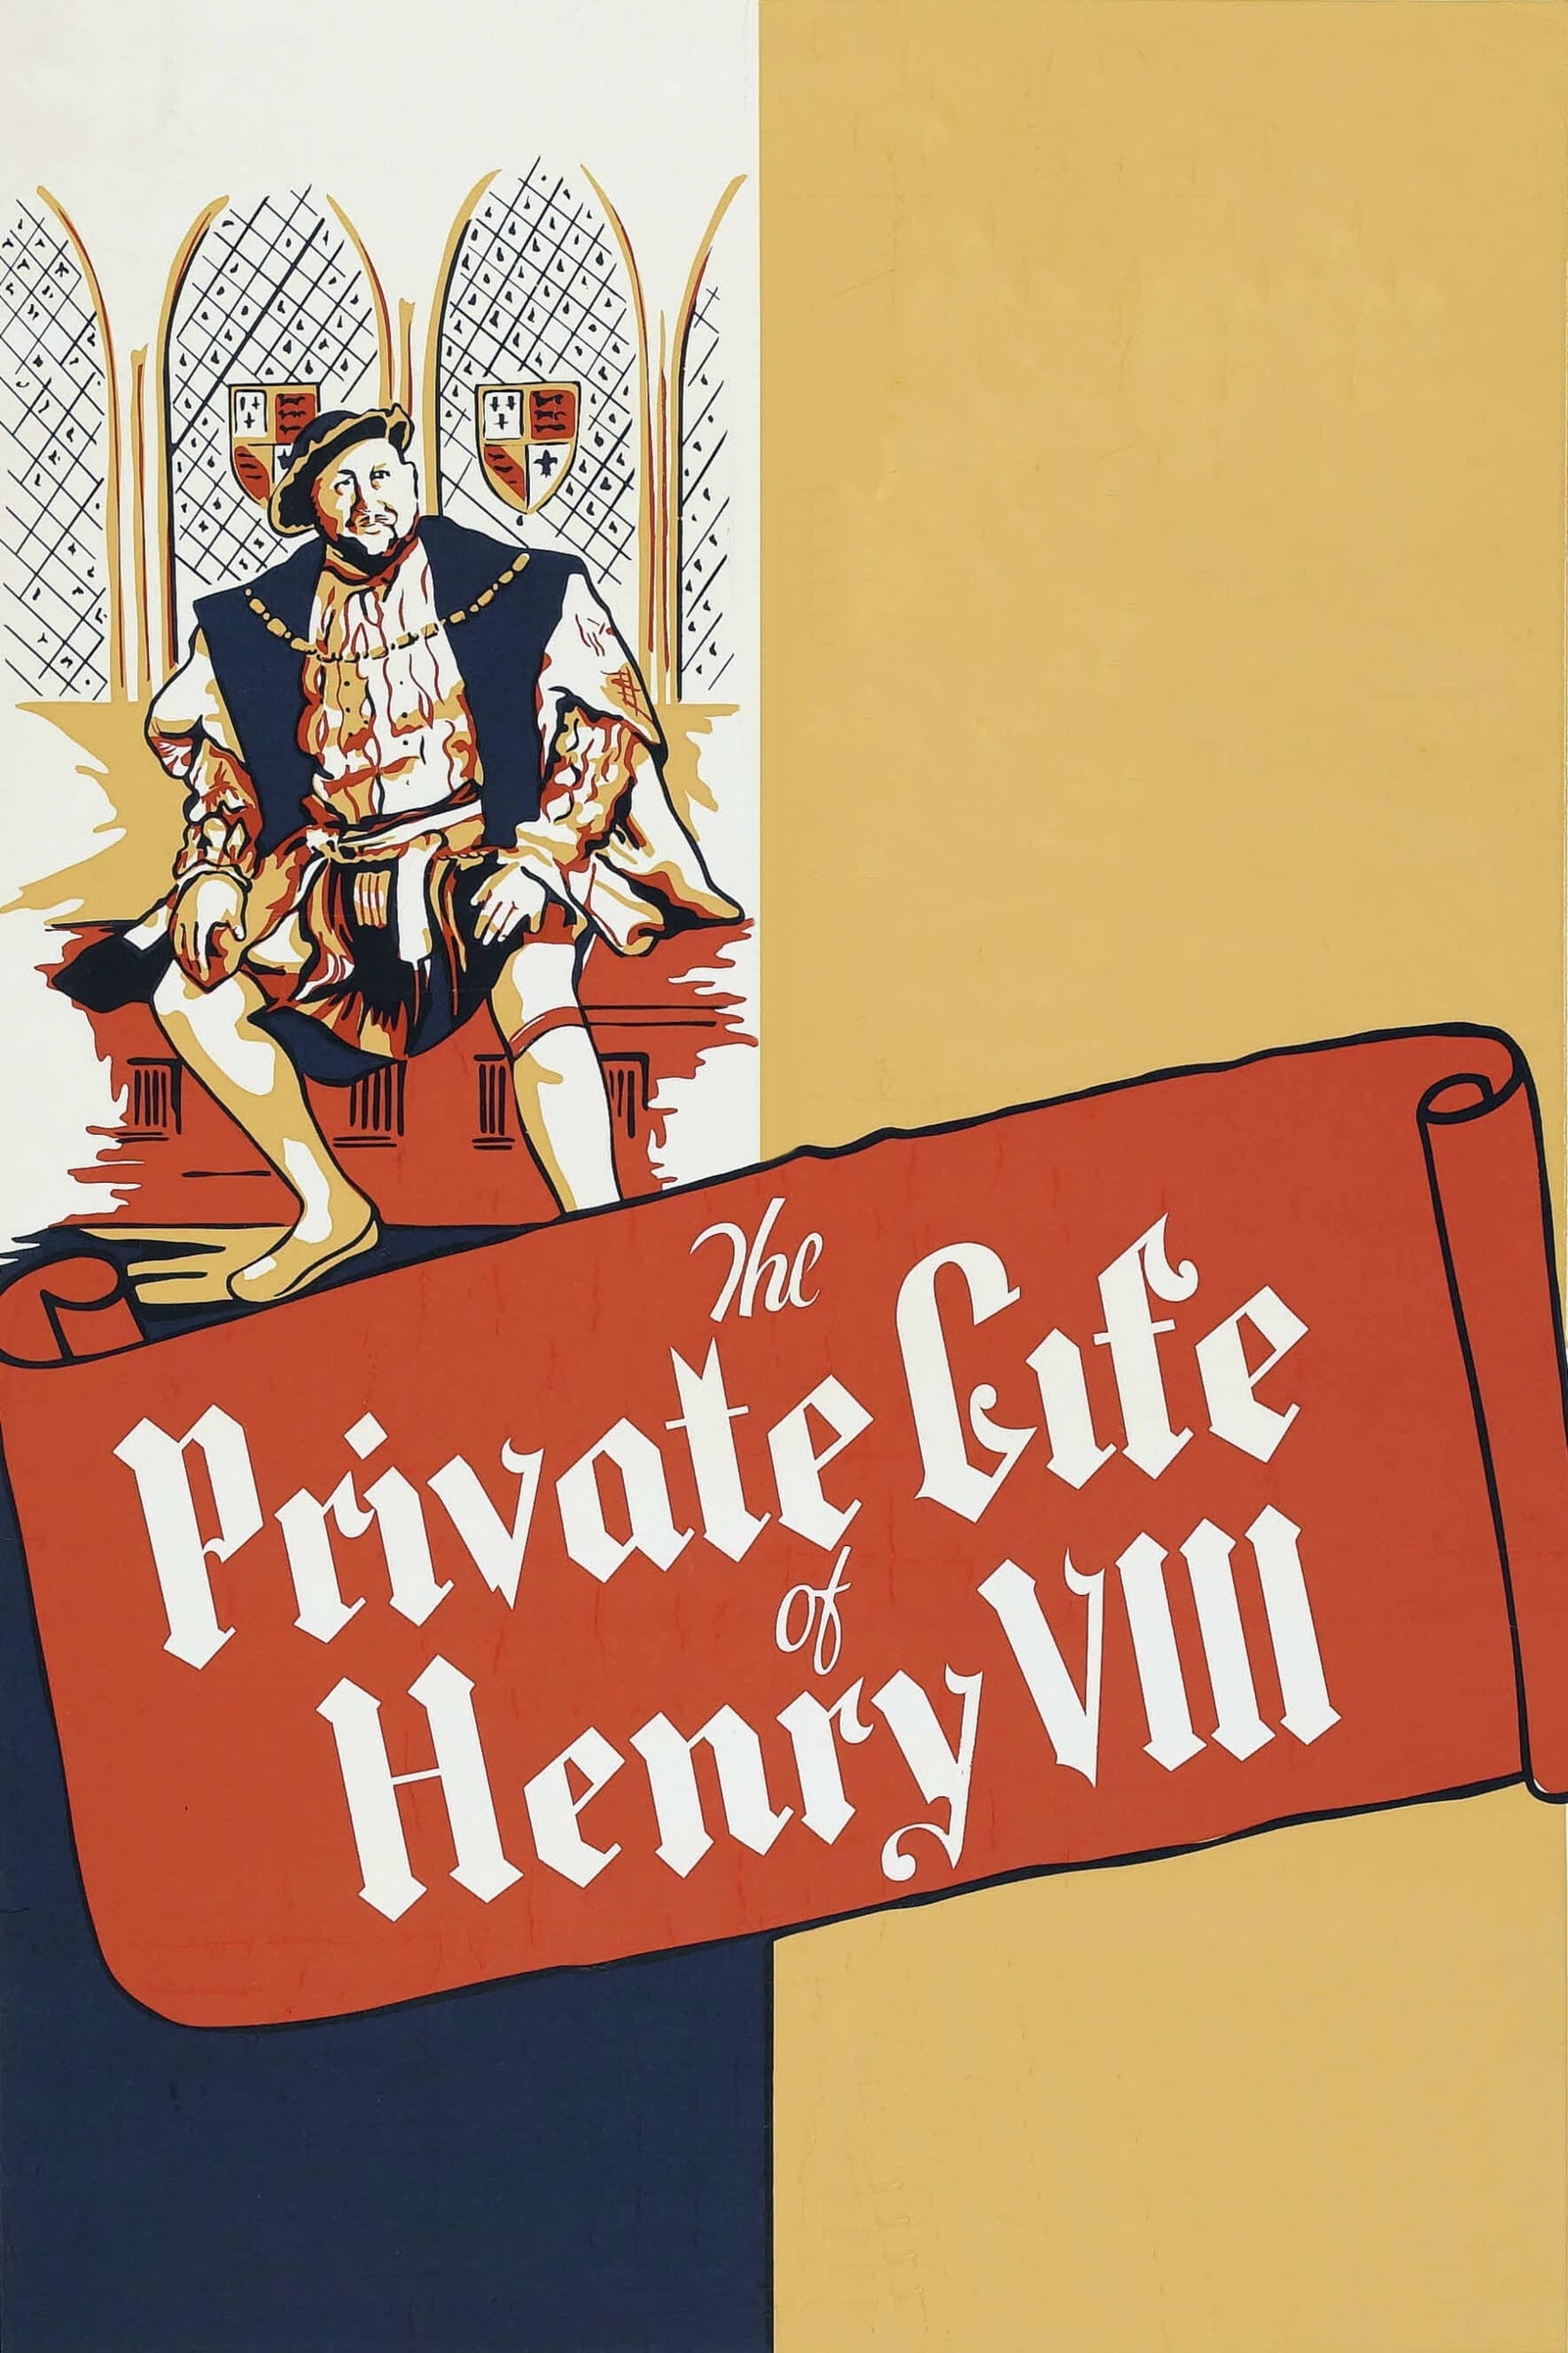 La vida privada de Enrique VIII